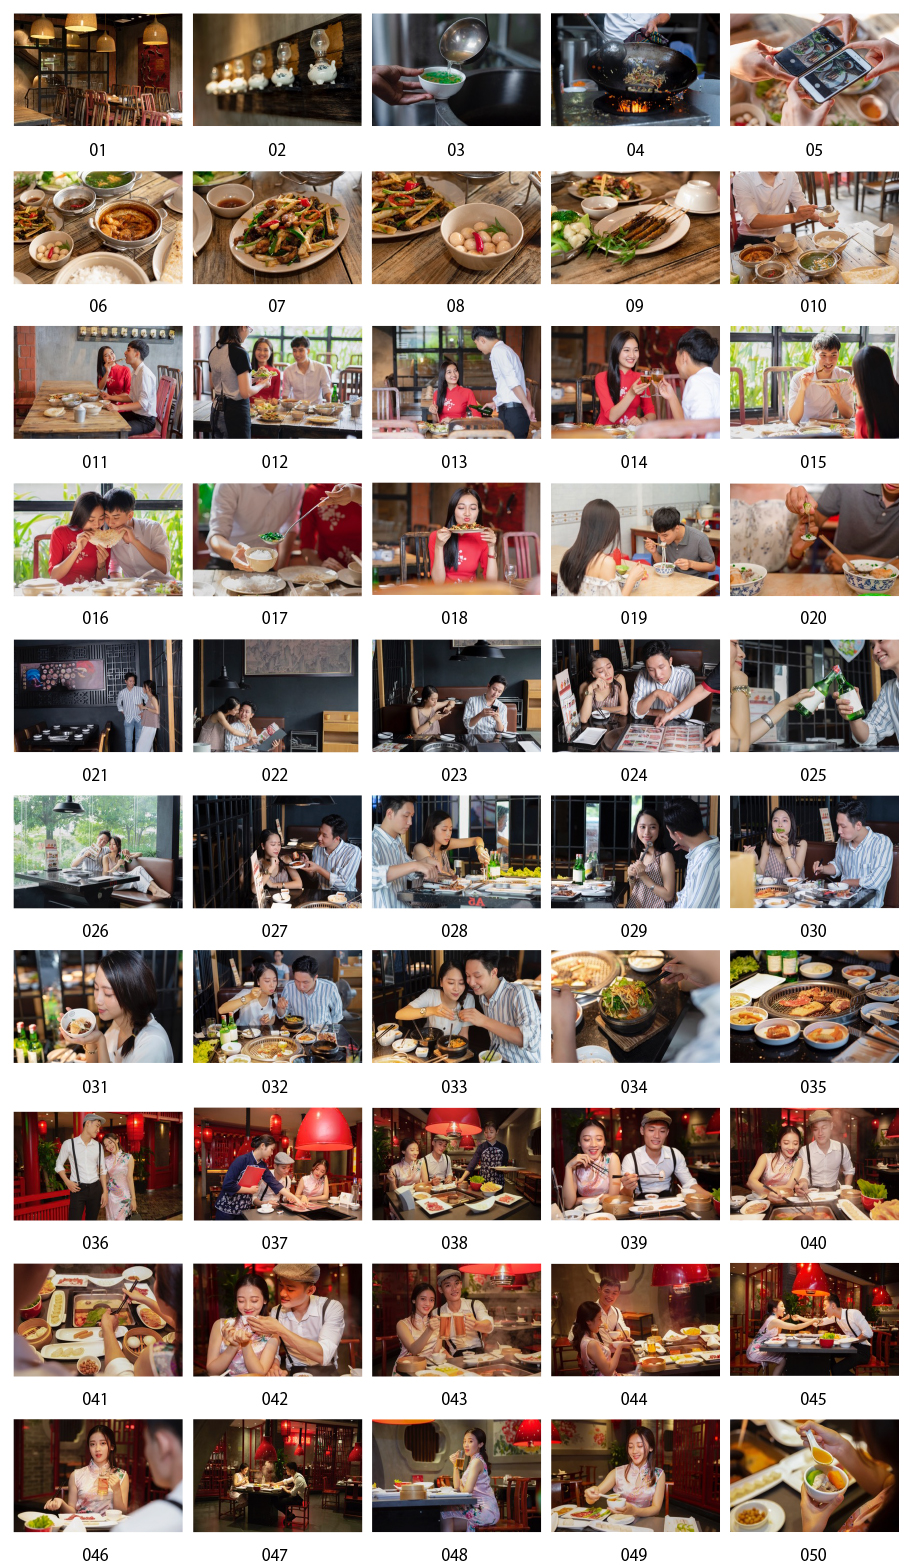 亞洲食物和夫婦照片